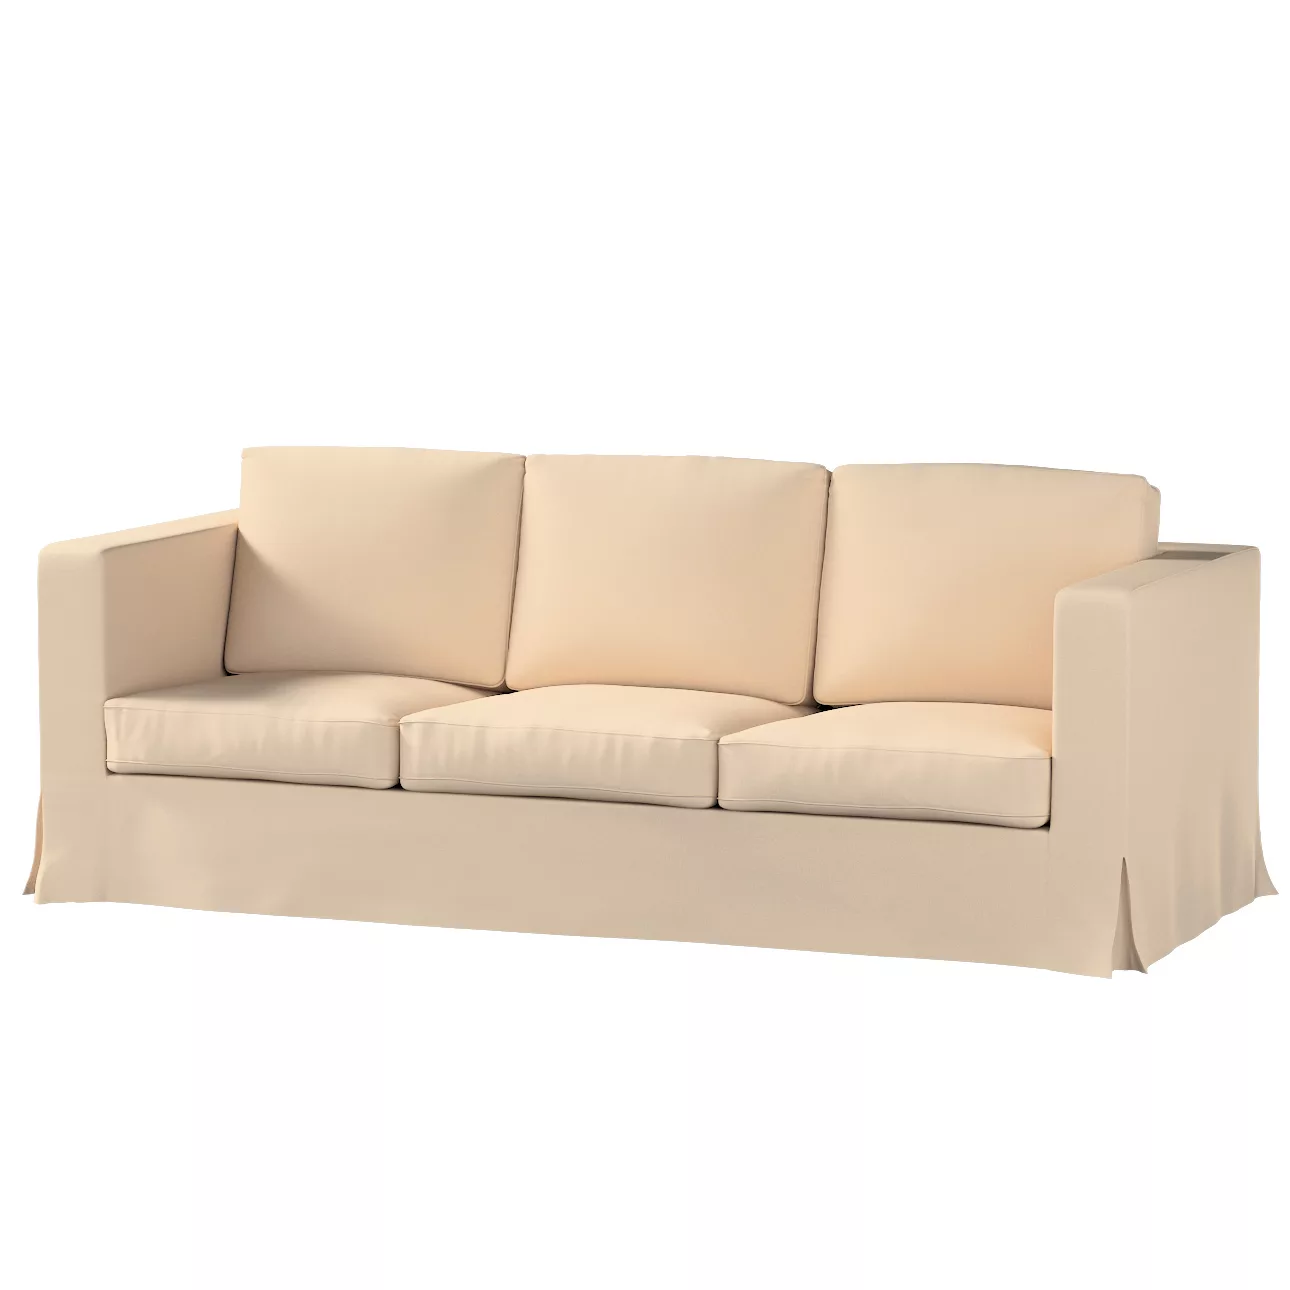 Bezug für Karlanda 3-Sitzer Sofa nicht ausklappbar, lang, creme-beige, Bezu günstig online kaufen